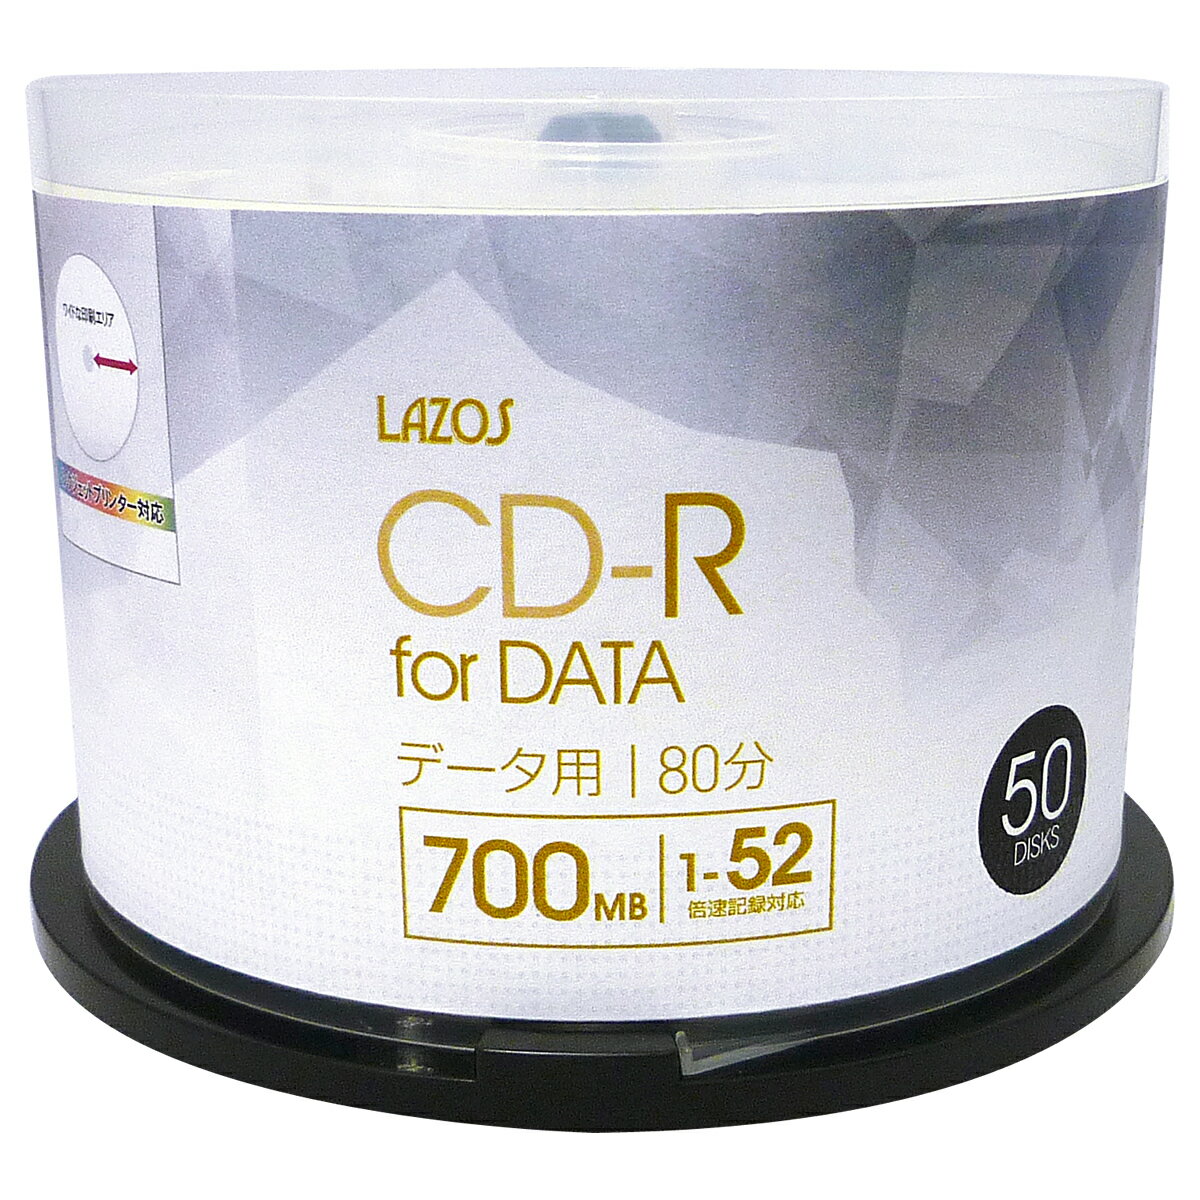 【記録メディア】 Lazos(ラソス) CD-R データ用 700MB 1-52倍速 ワイドホワイトレーベル 50枚スピンドルケース (L-CD50P) 2